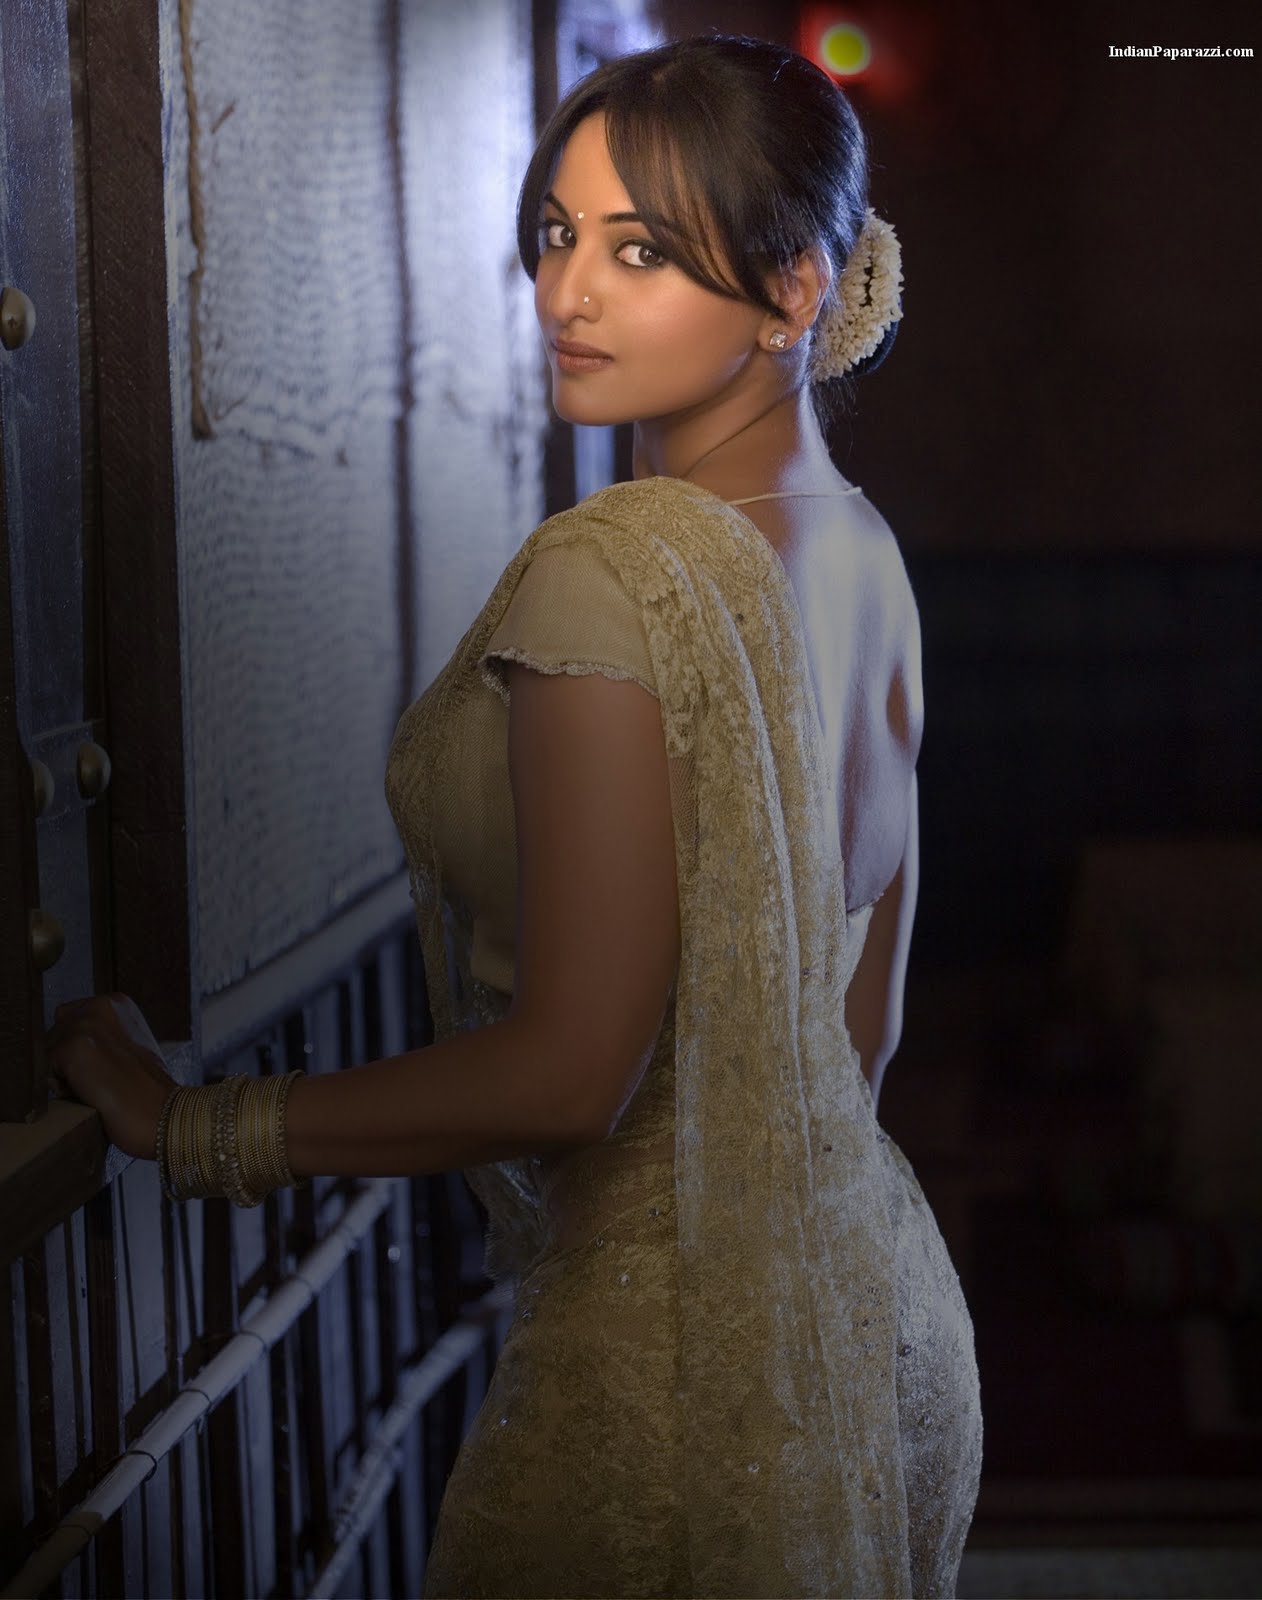 Bollywood Actress Sonakshi Sinha | Actress Photos, Stills, Wallpapers